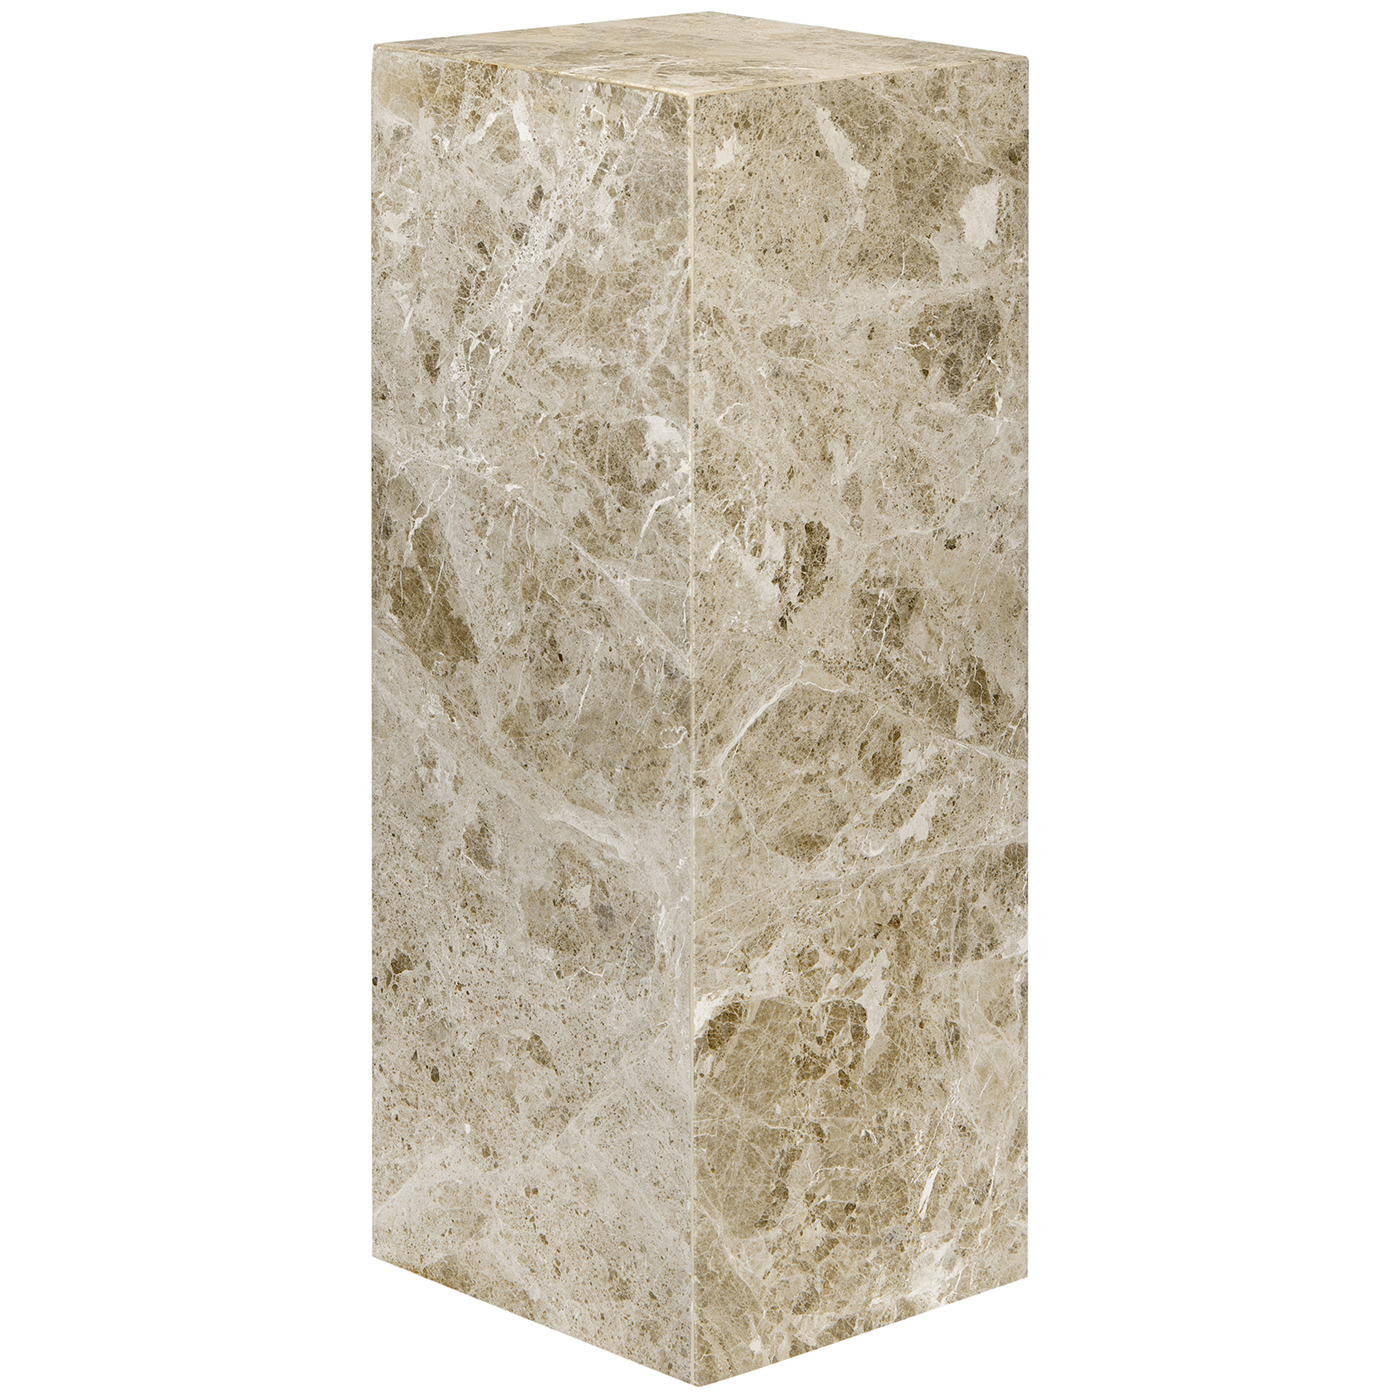 TI 1739 405 12 – Cubic Pedestal Marble Brown Latte 25x25x70cm (2)